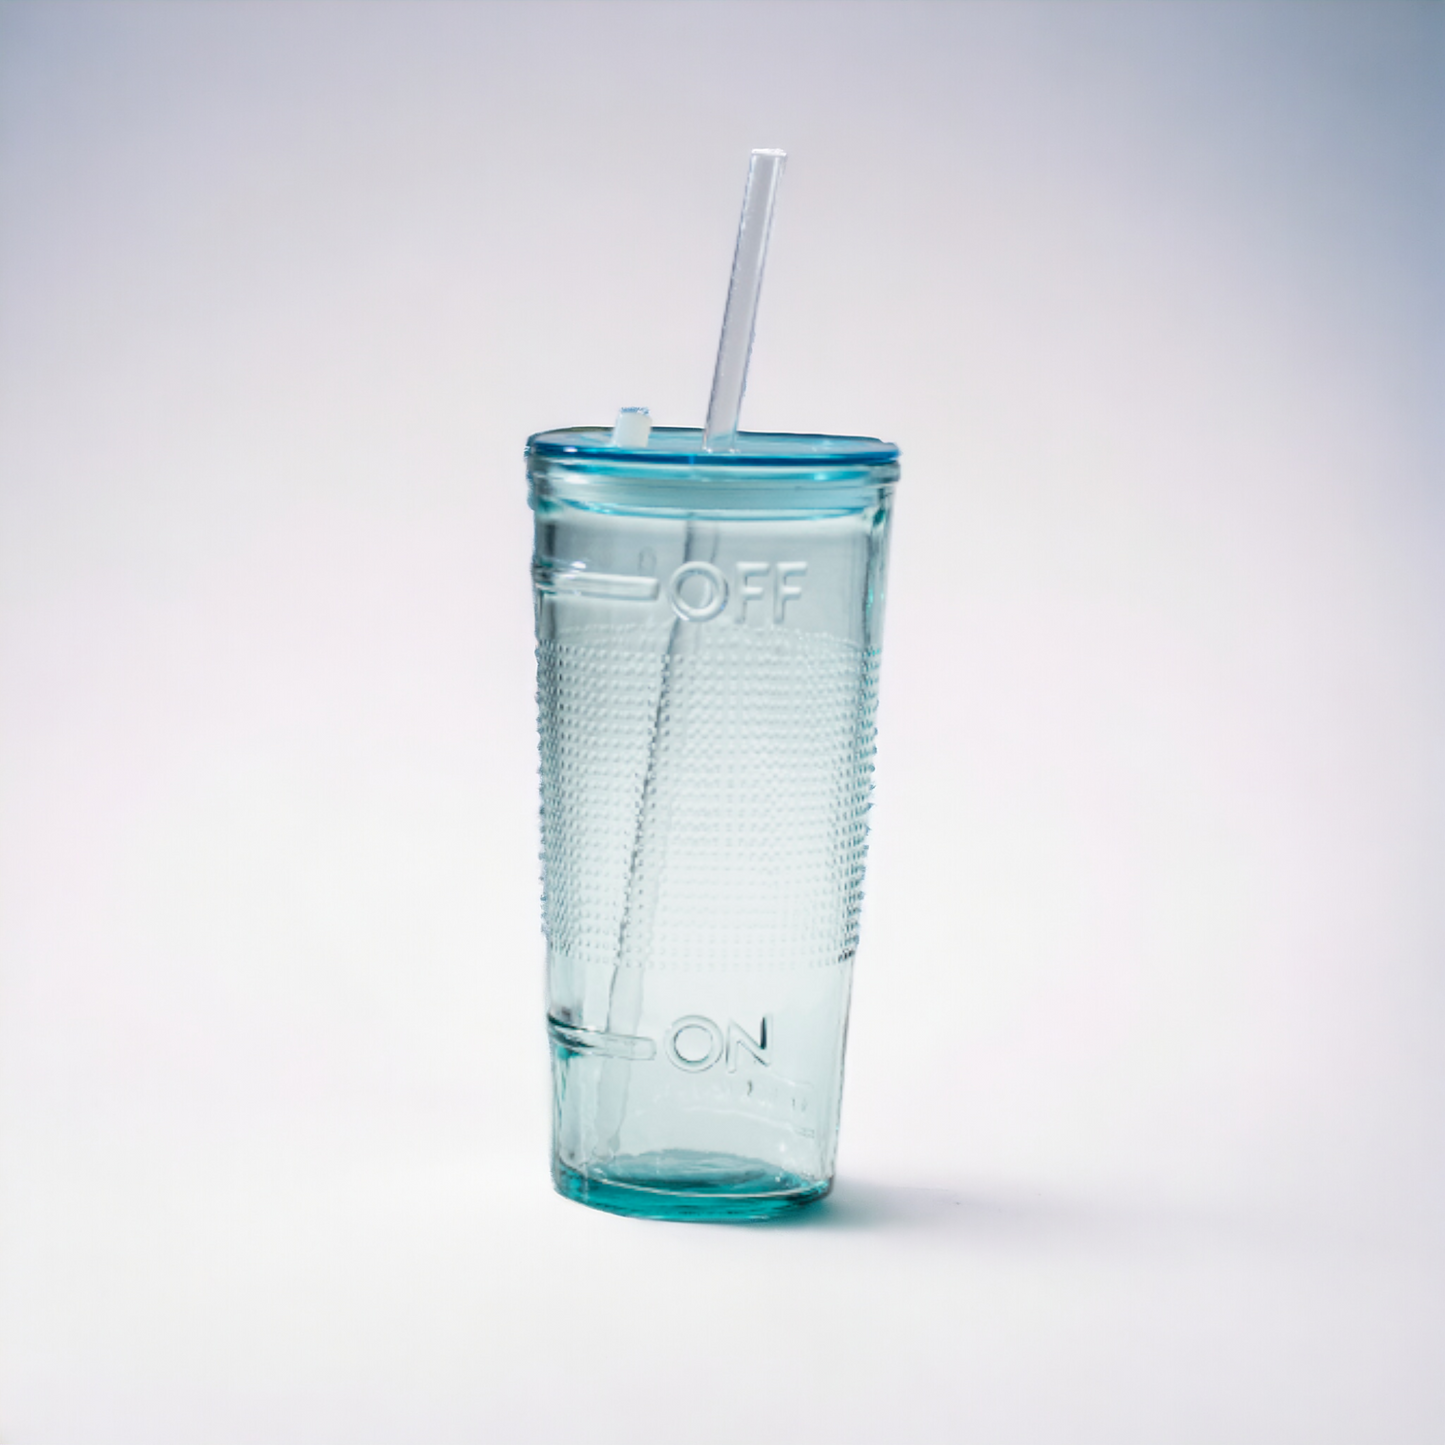 2er Set Trinkglas - to go "Off and On" mit Trinkhalm und Deckel - 500 ml